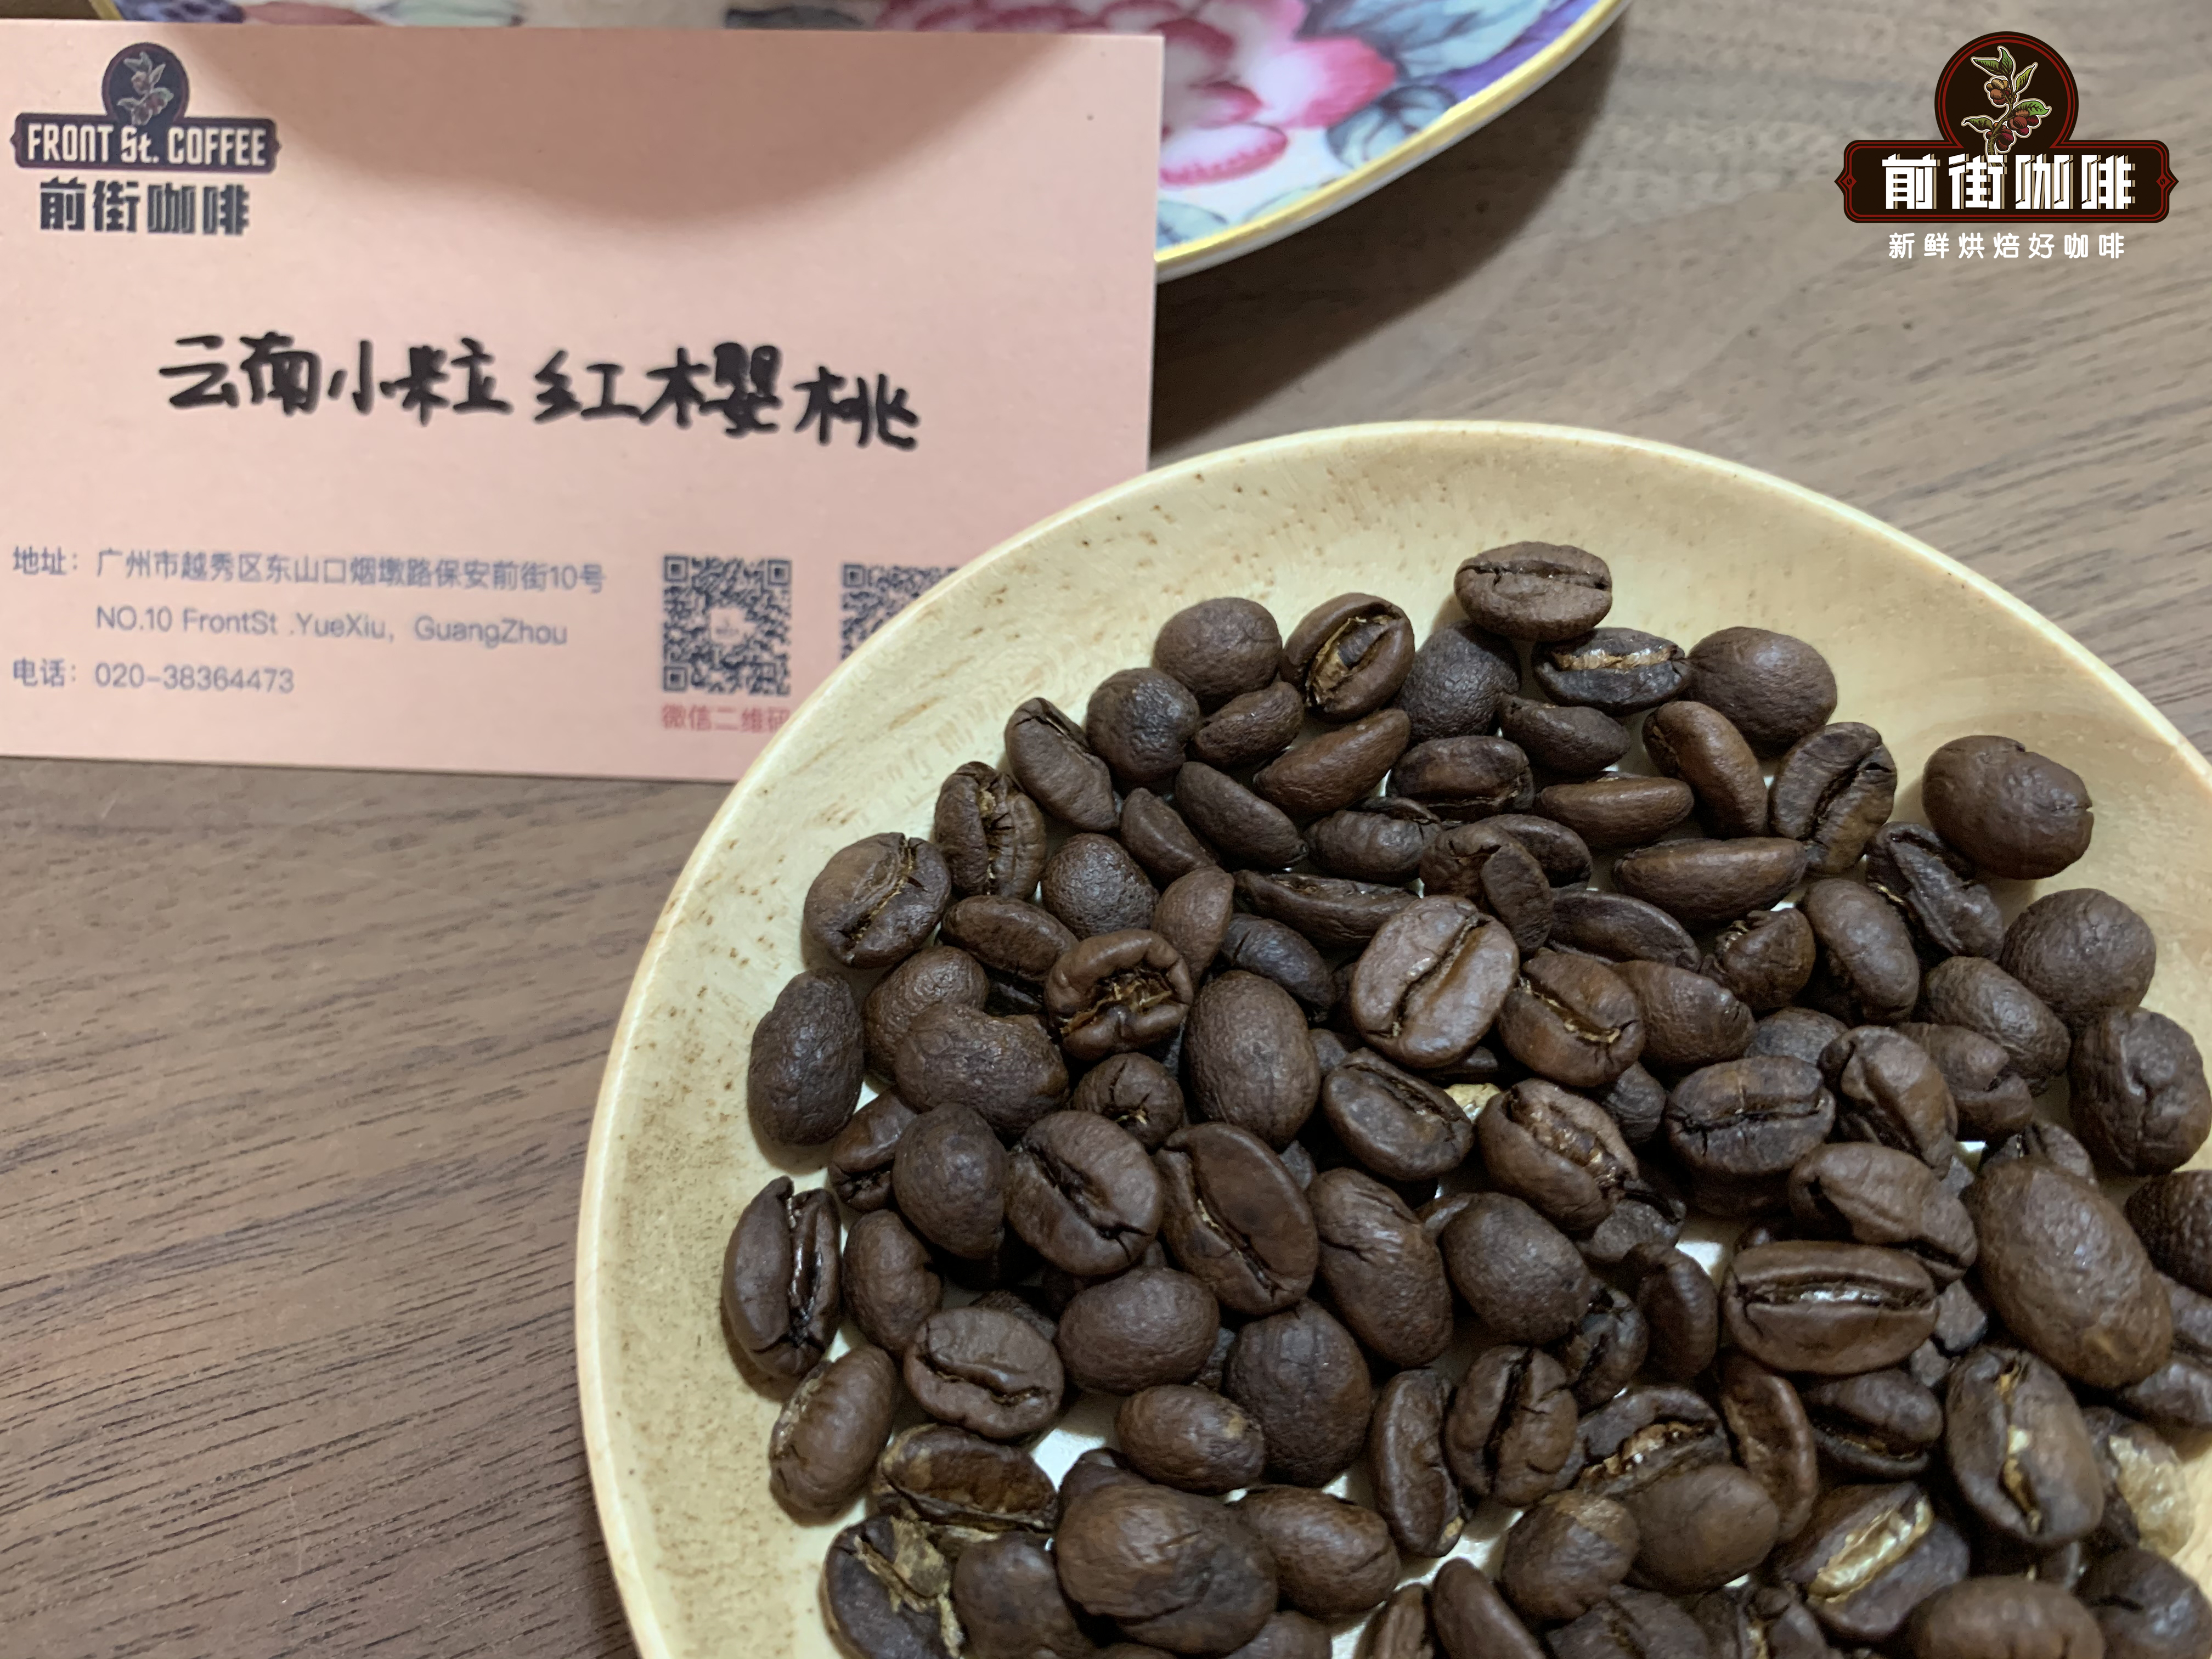 雲南小粒咖啡和耶加雪菲咖啡豆的區別 埃塞耶加雪菲產區特點介紹